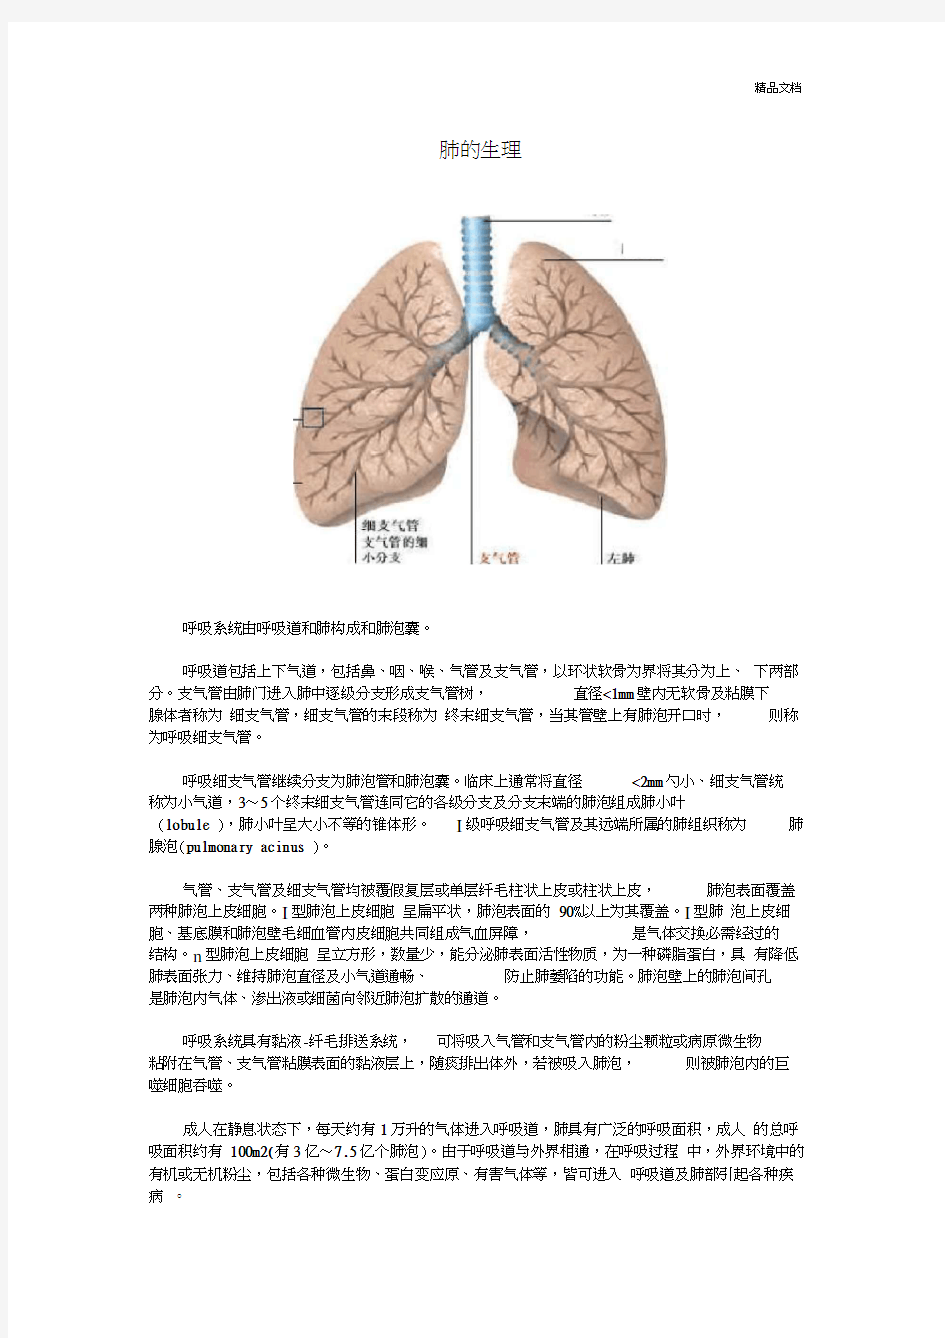 肺的生理解剖